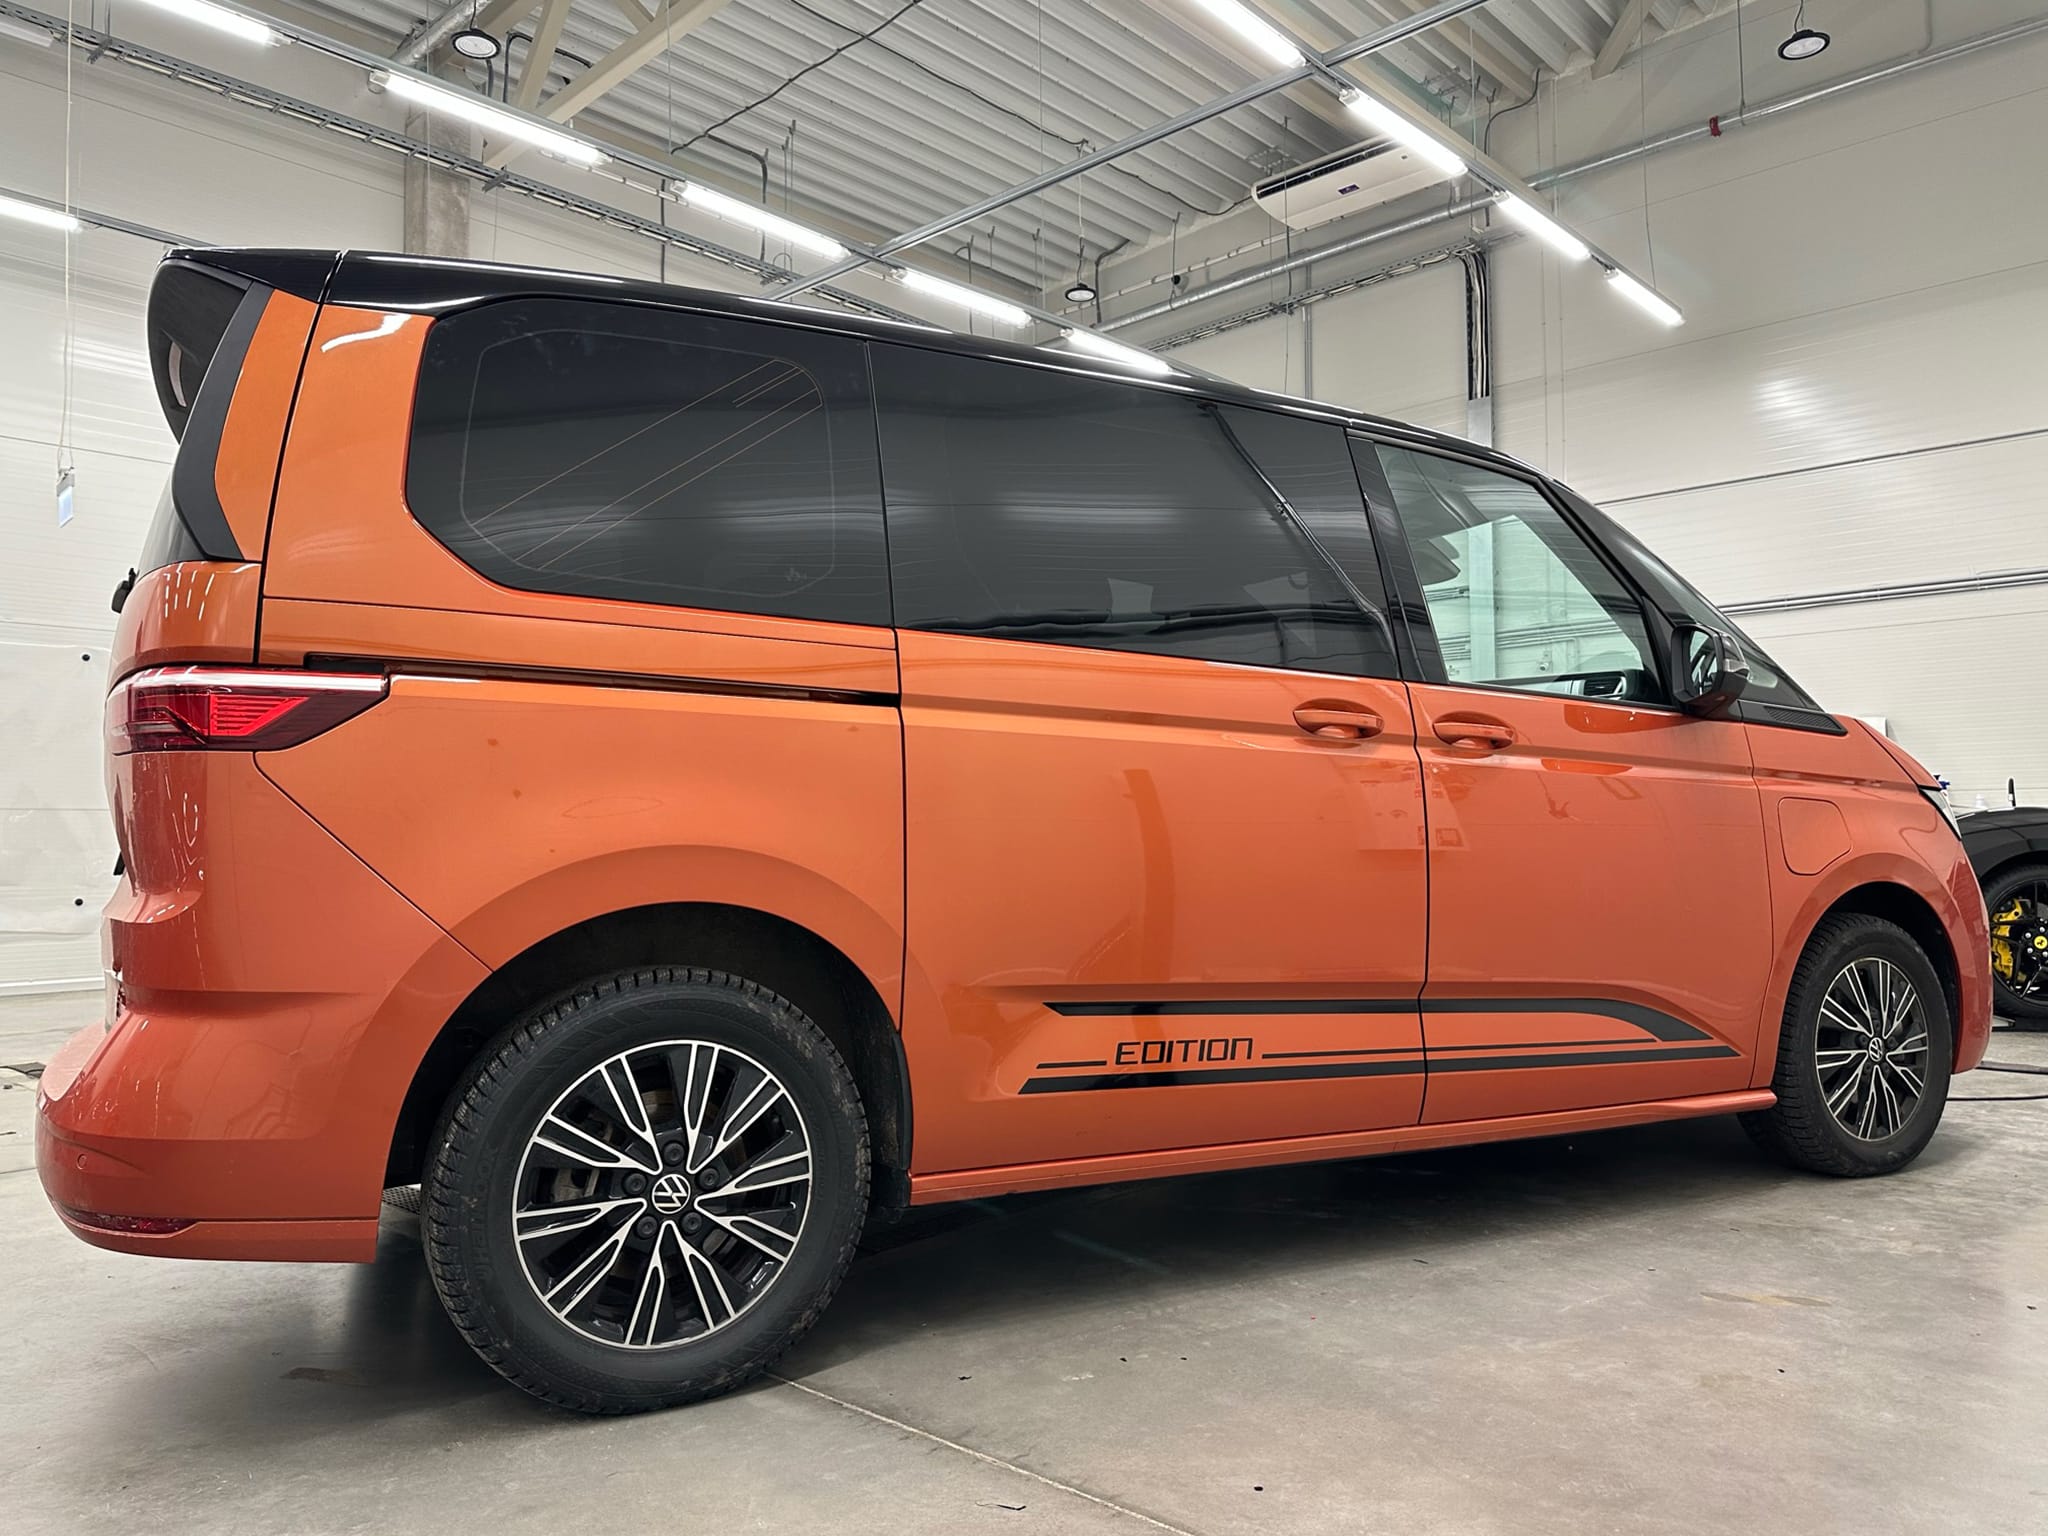 VW Multivan Edition lipdukų gamyba ir apklijavimas